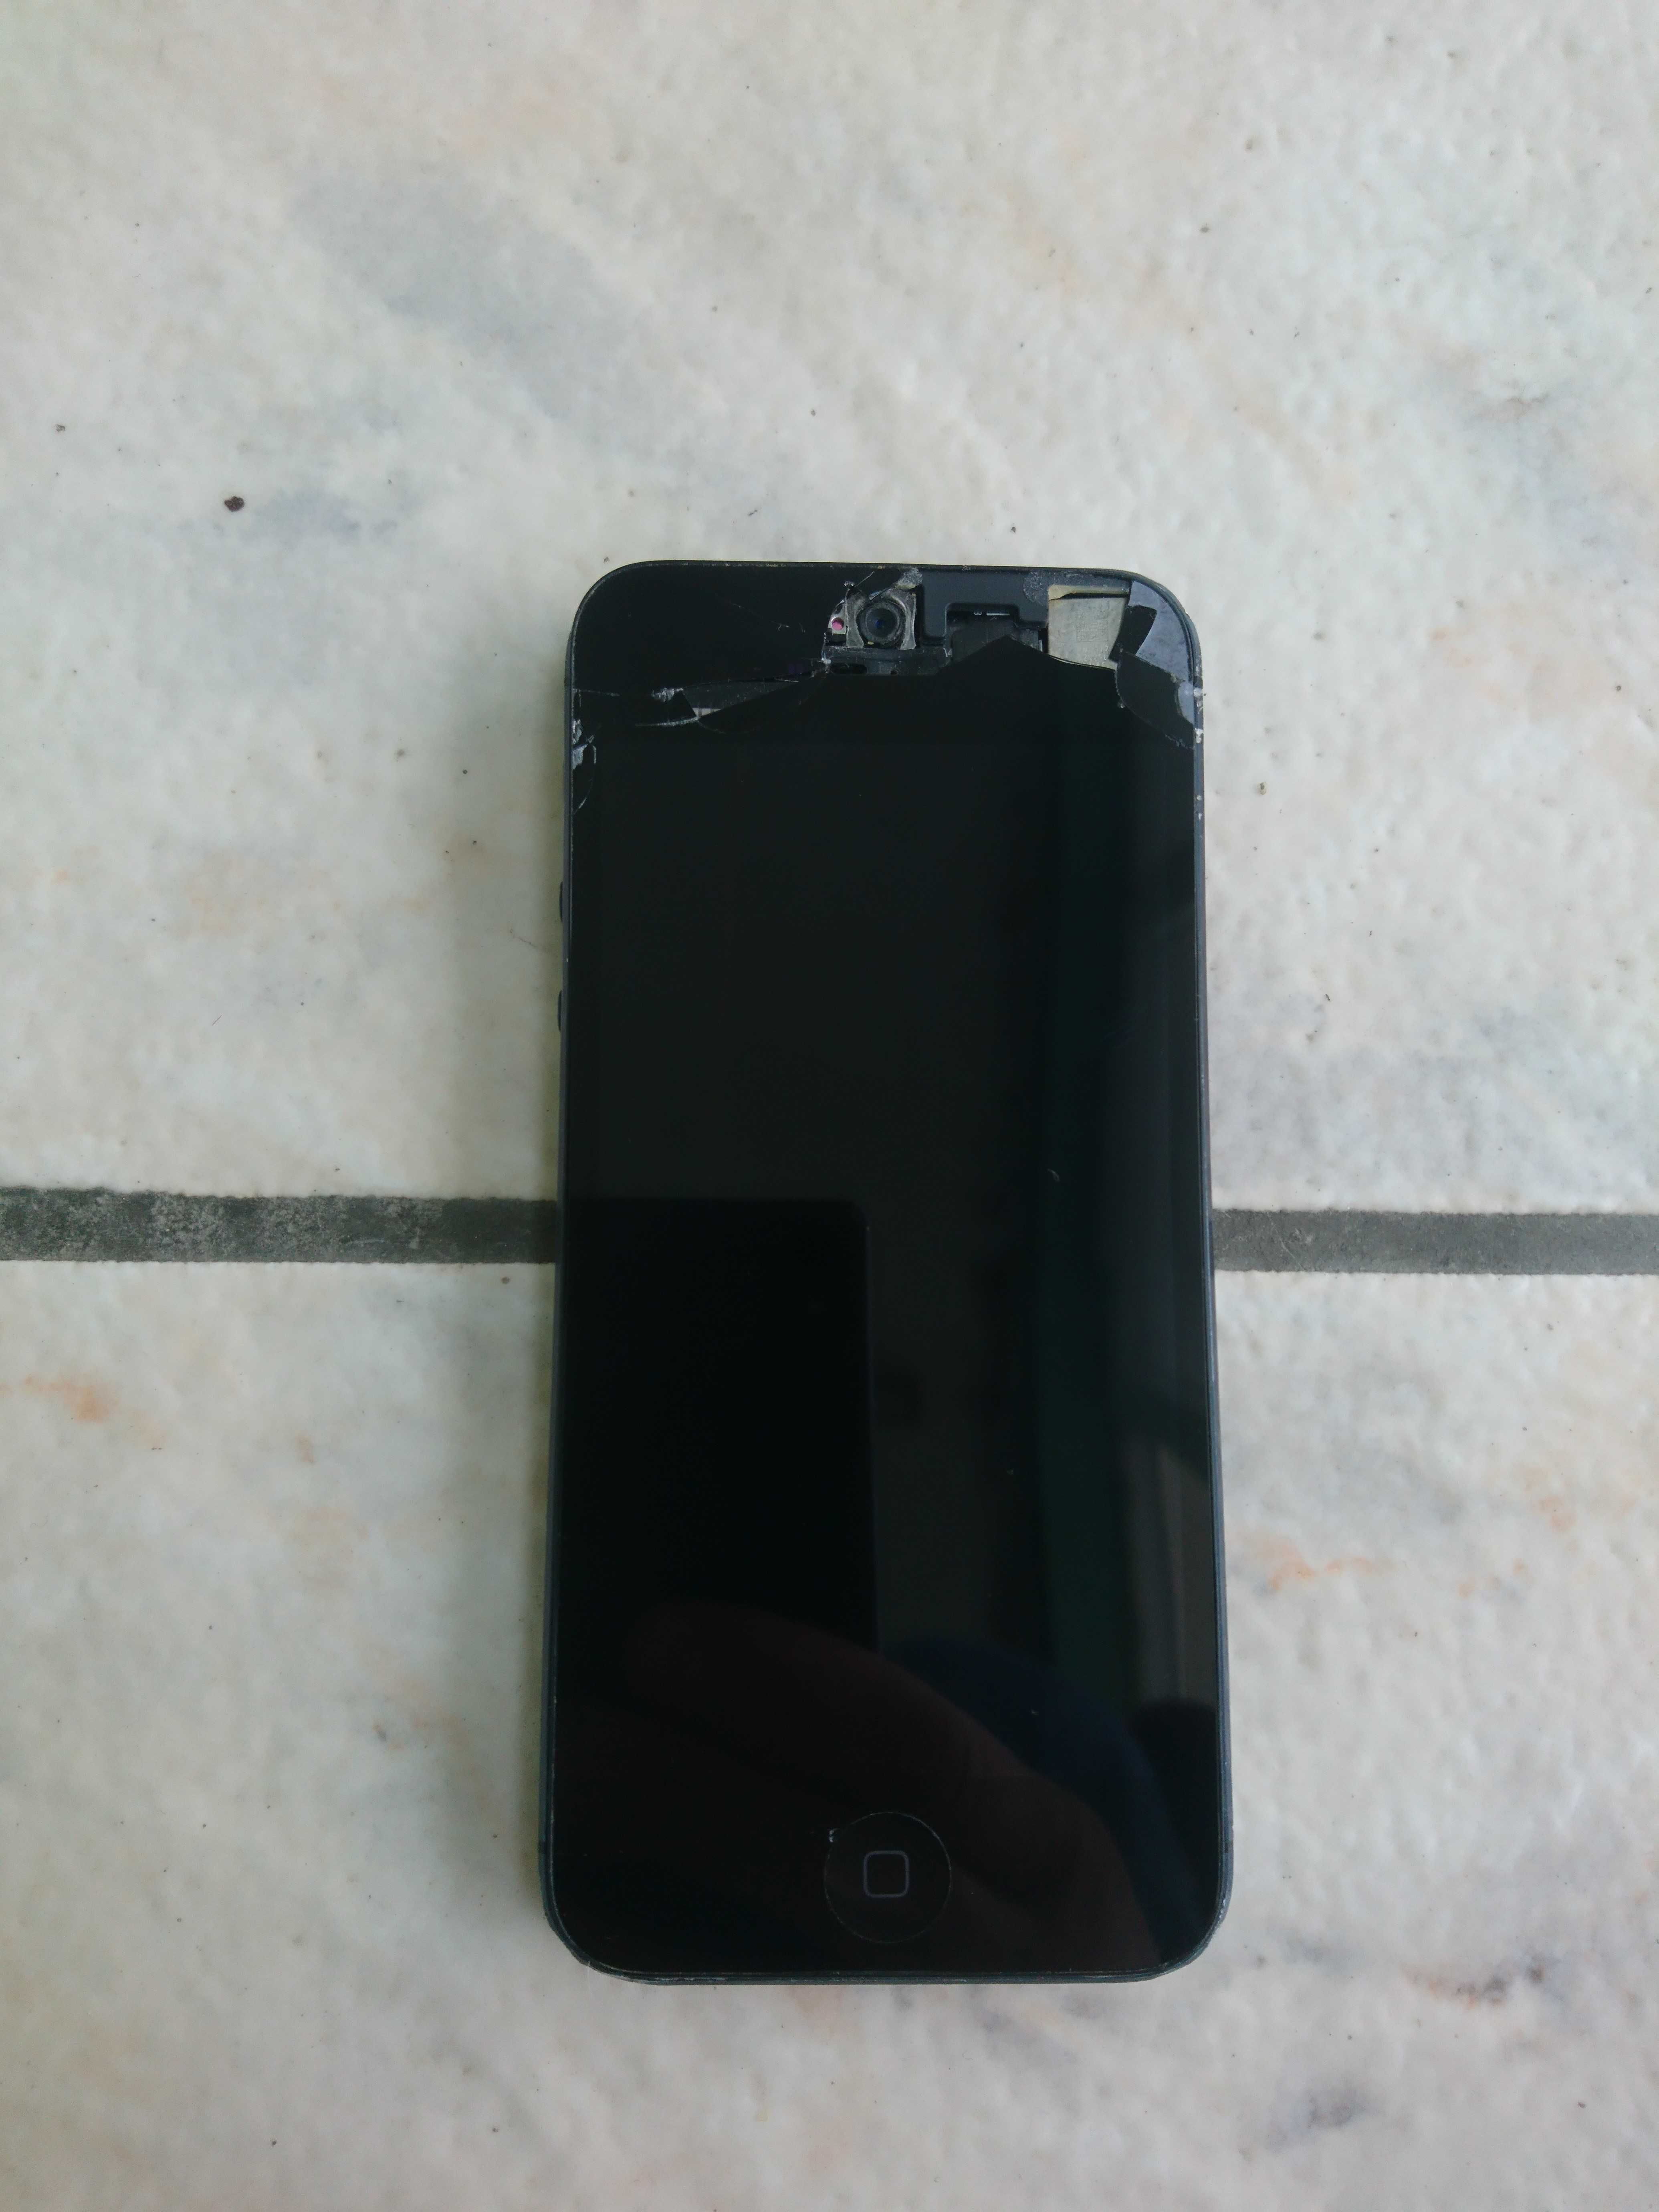 Telefon mobil iPhone 5, model A 1429 – defect